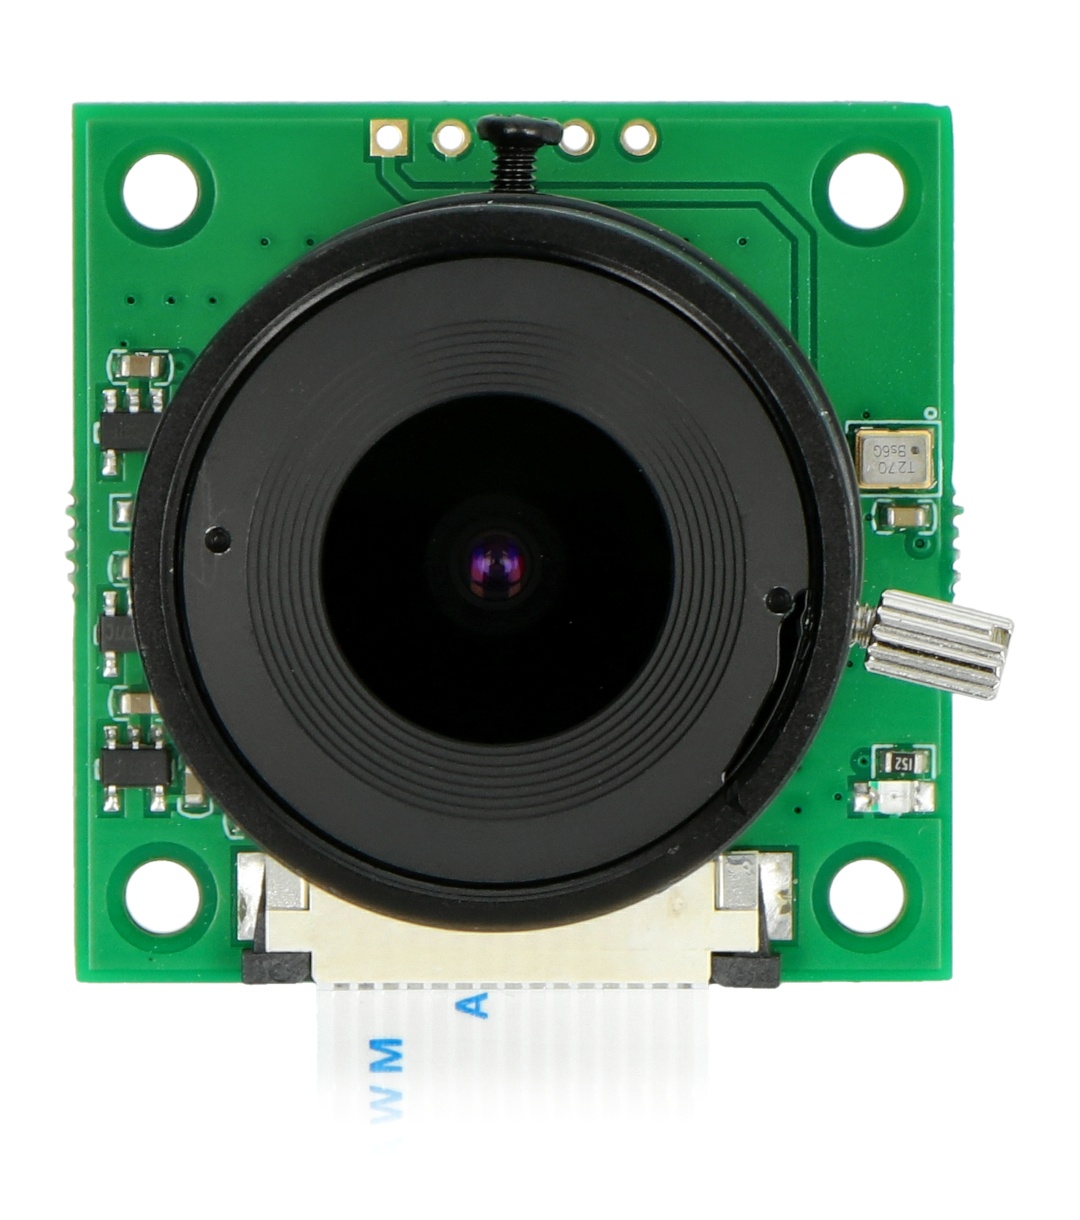 Kamera ArduCam OV5647 5Mpx z obiektywem LS-2718 - Sklep, Opinie, Cena w  Allegro.pl